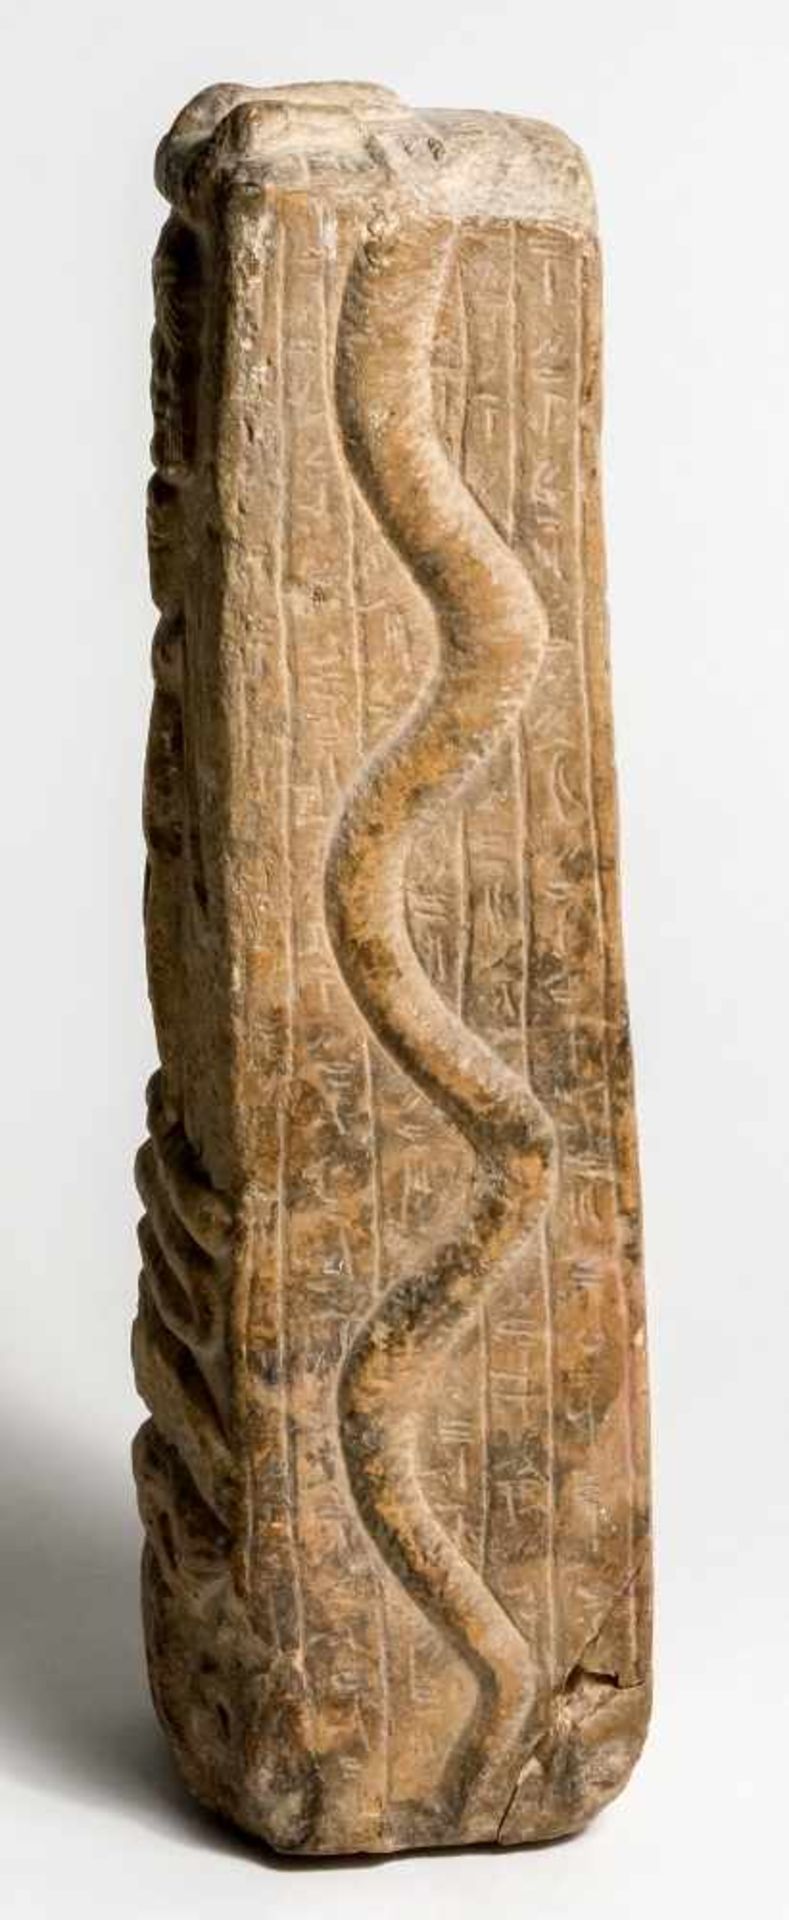 Magische Horus-SteleÄgypten, Spätzeit bis ptolemäisch (712-30v. Chr.)Kalkstein27,5 x 8 x 6 cmDie - Bild 2 aus 2